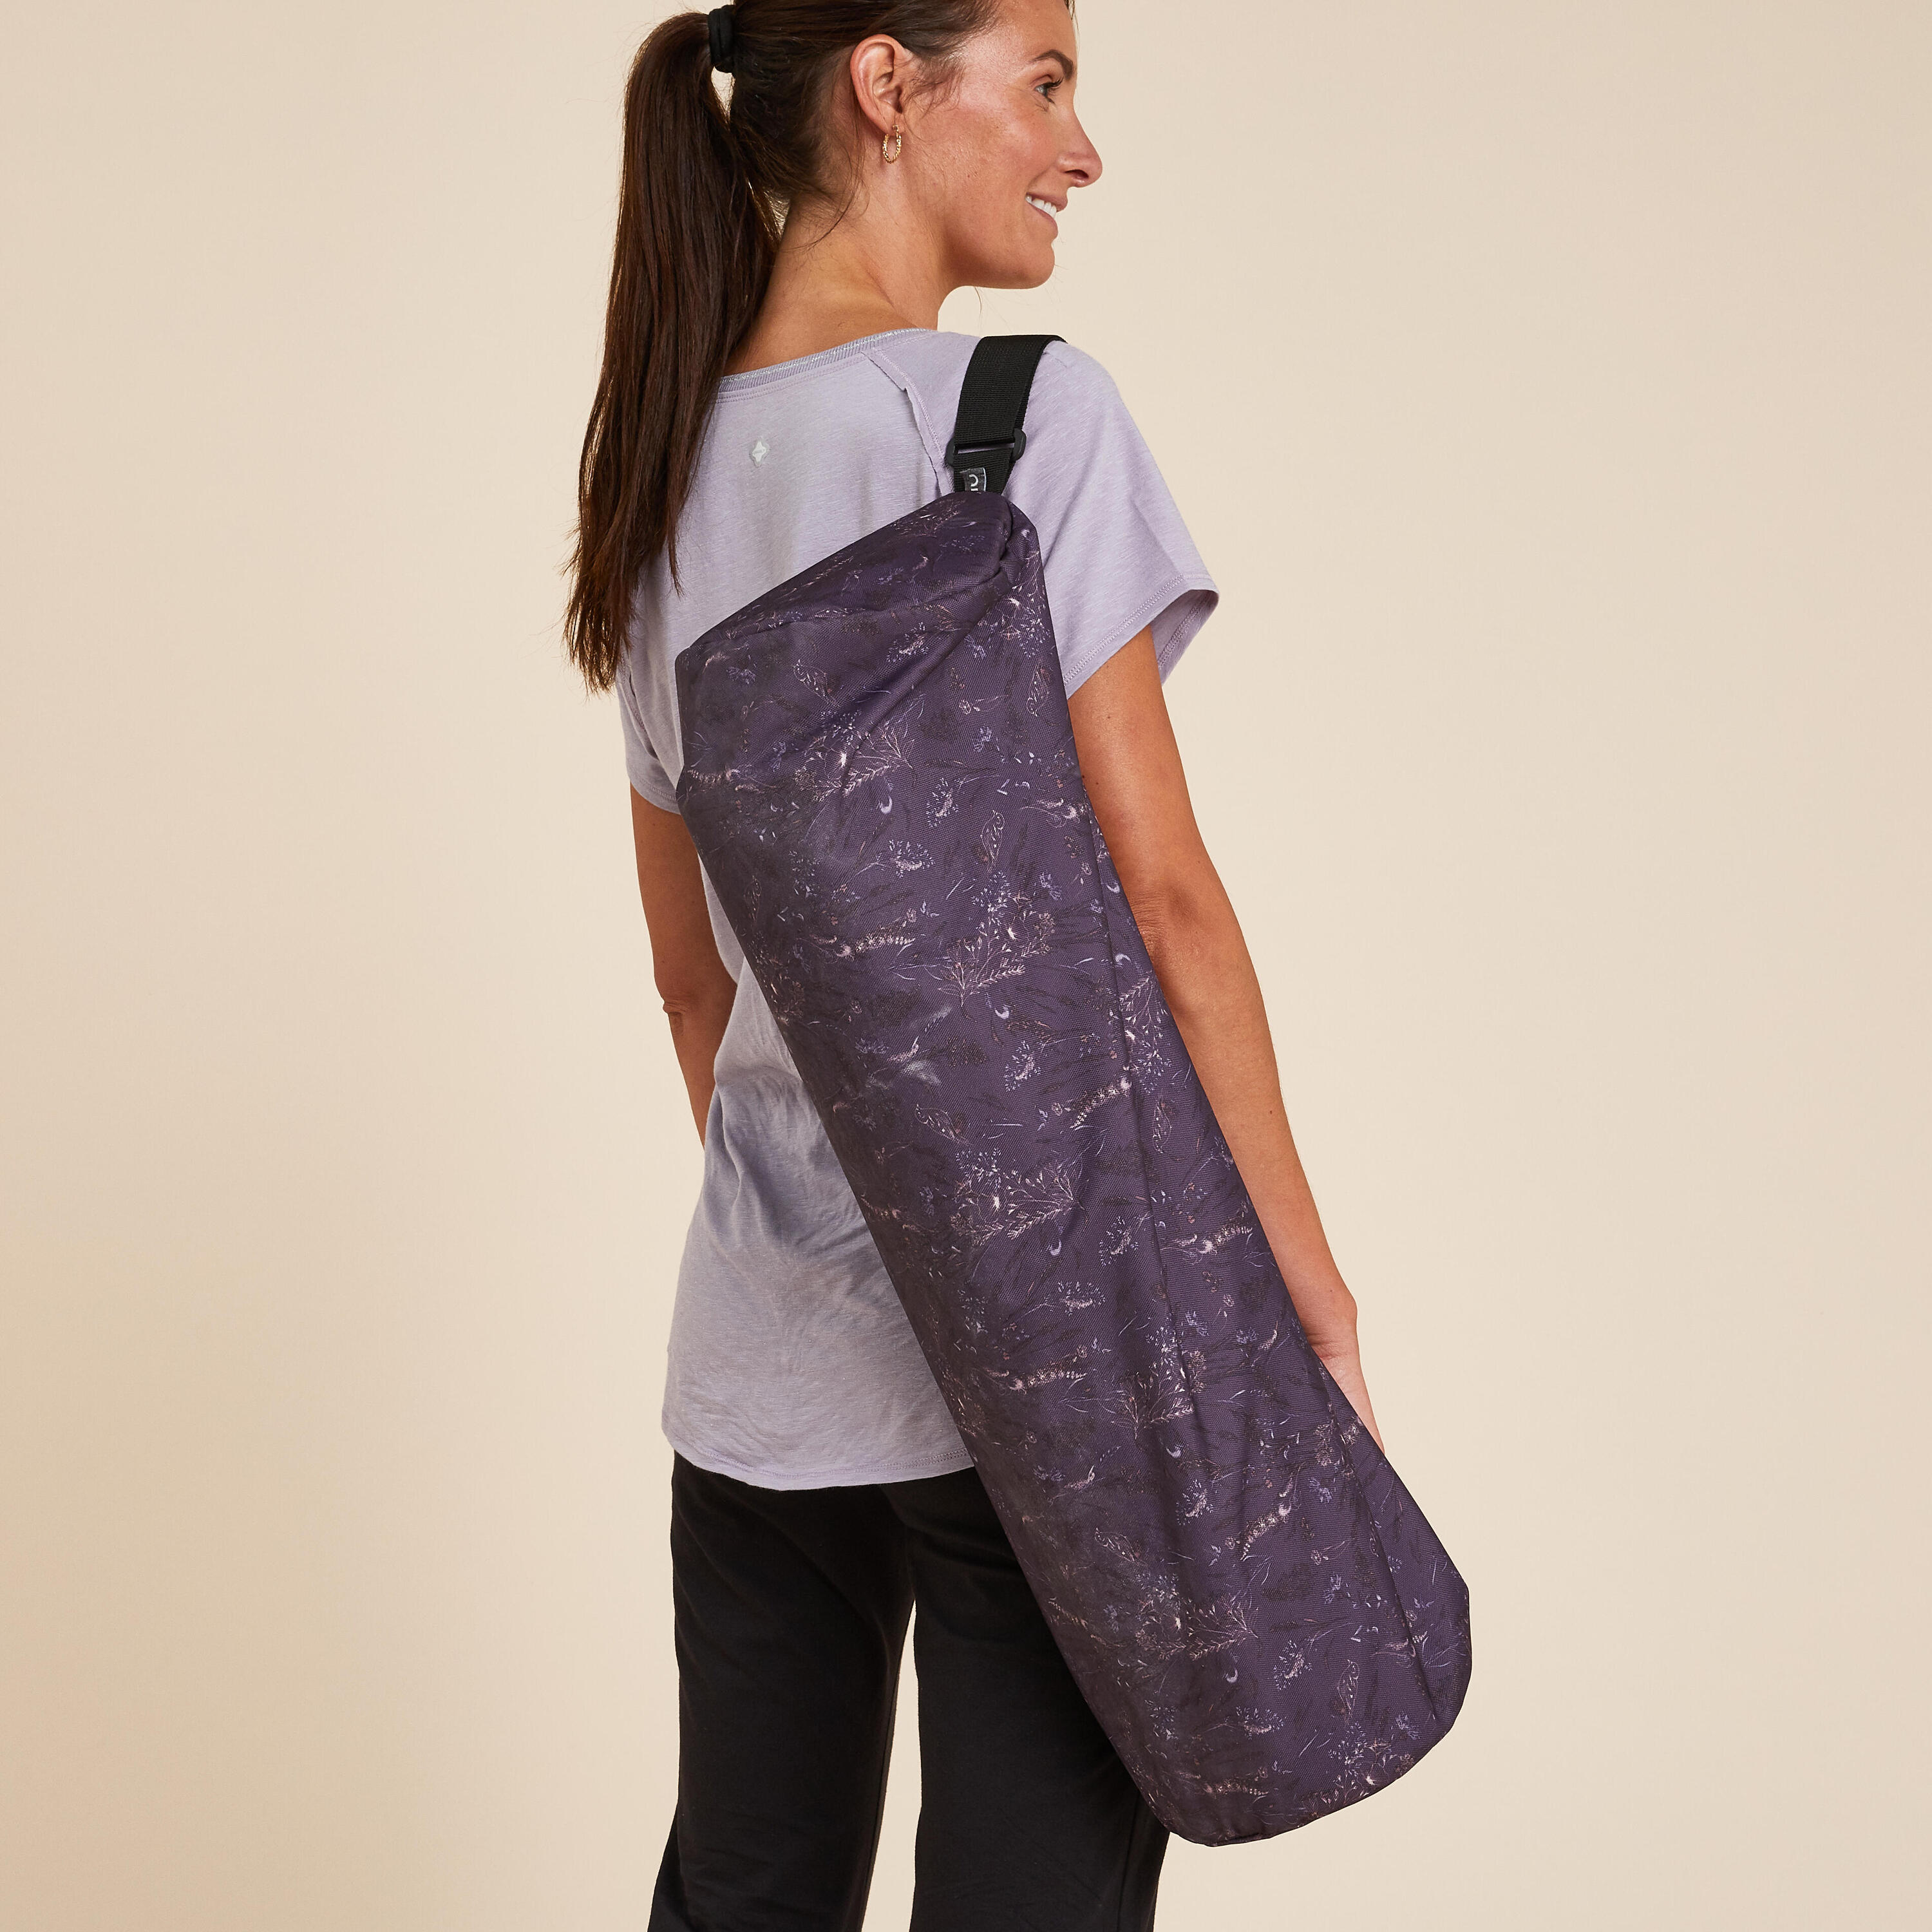 Yoga Mat Bag - Purple Floral Print 2/4